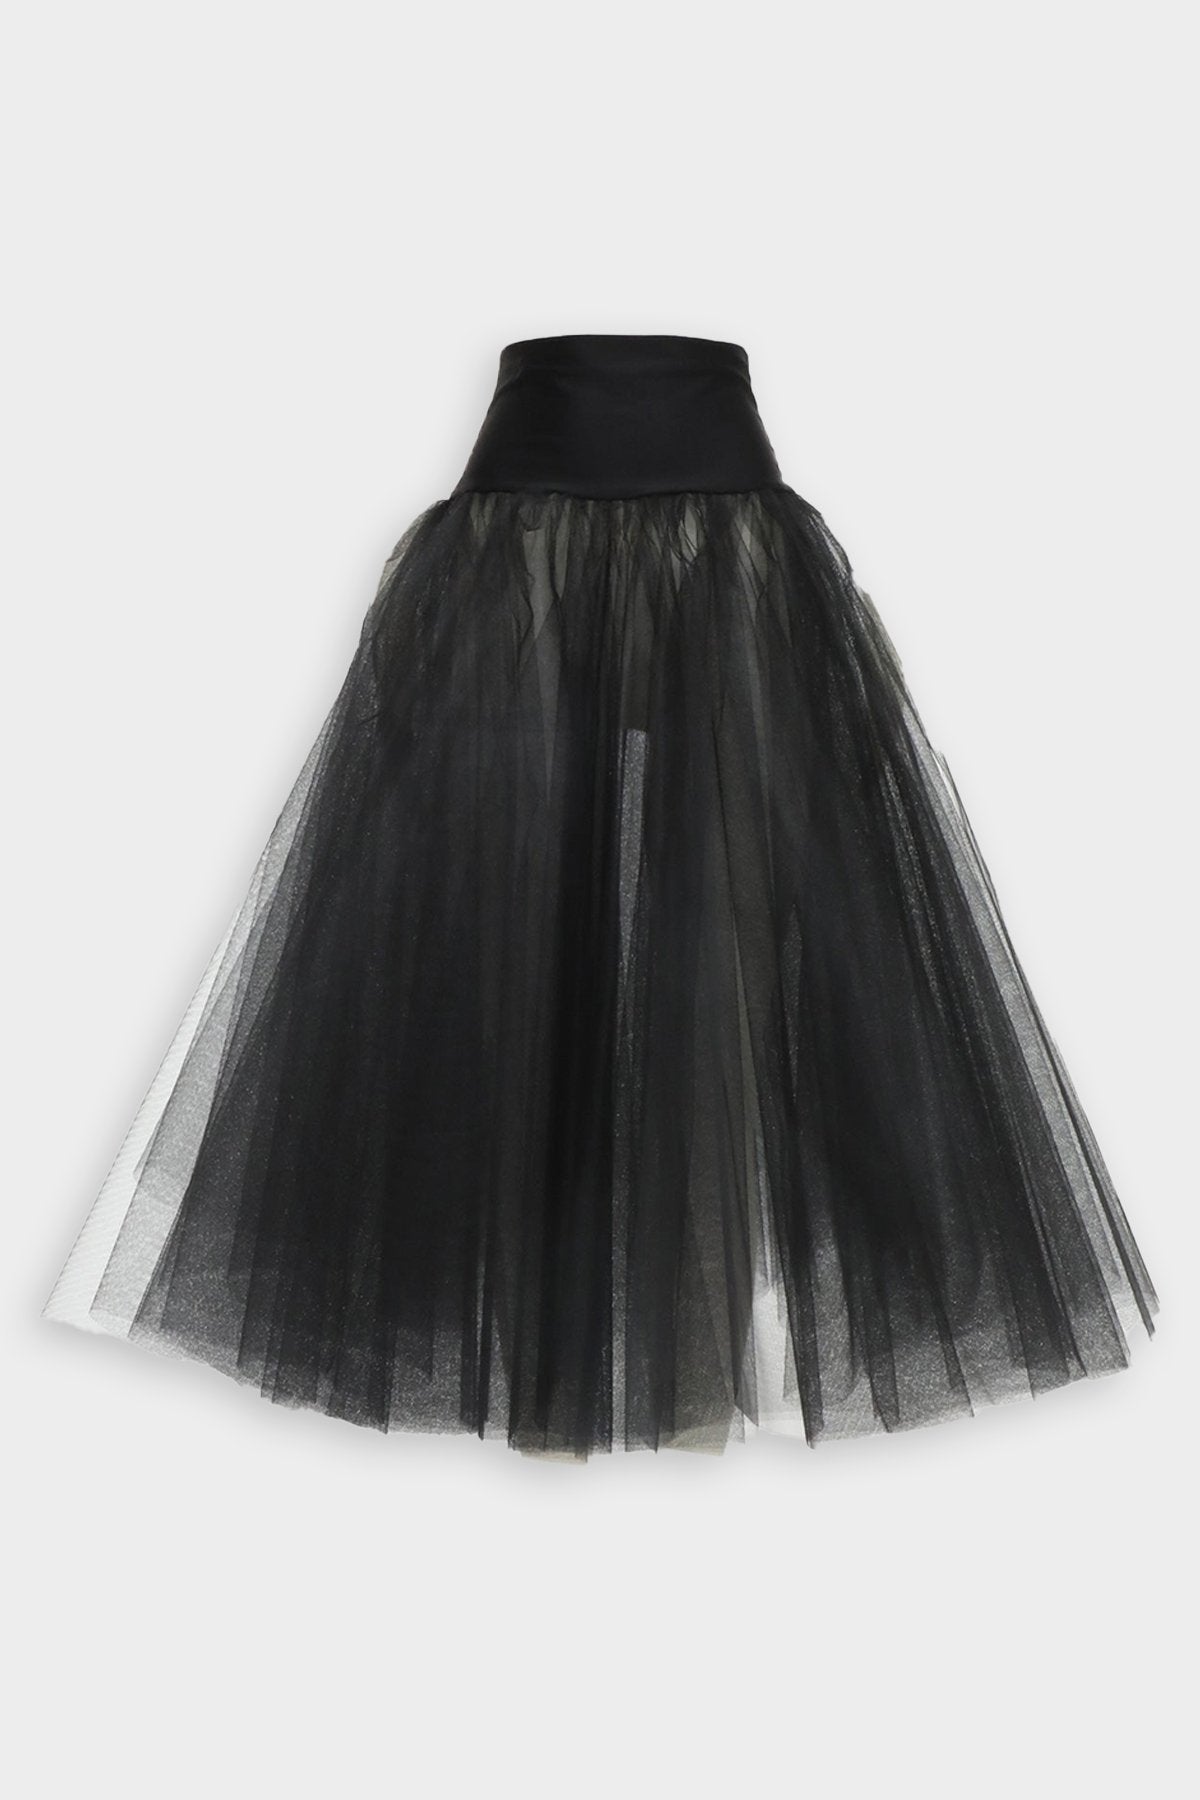 Midcalf Petticoat in Black - shop-olivia.com